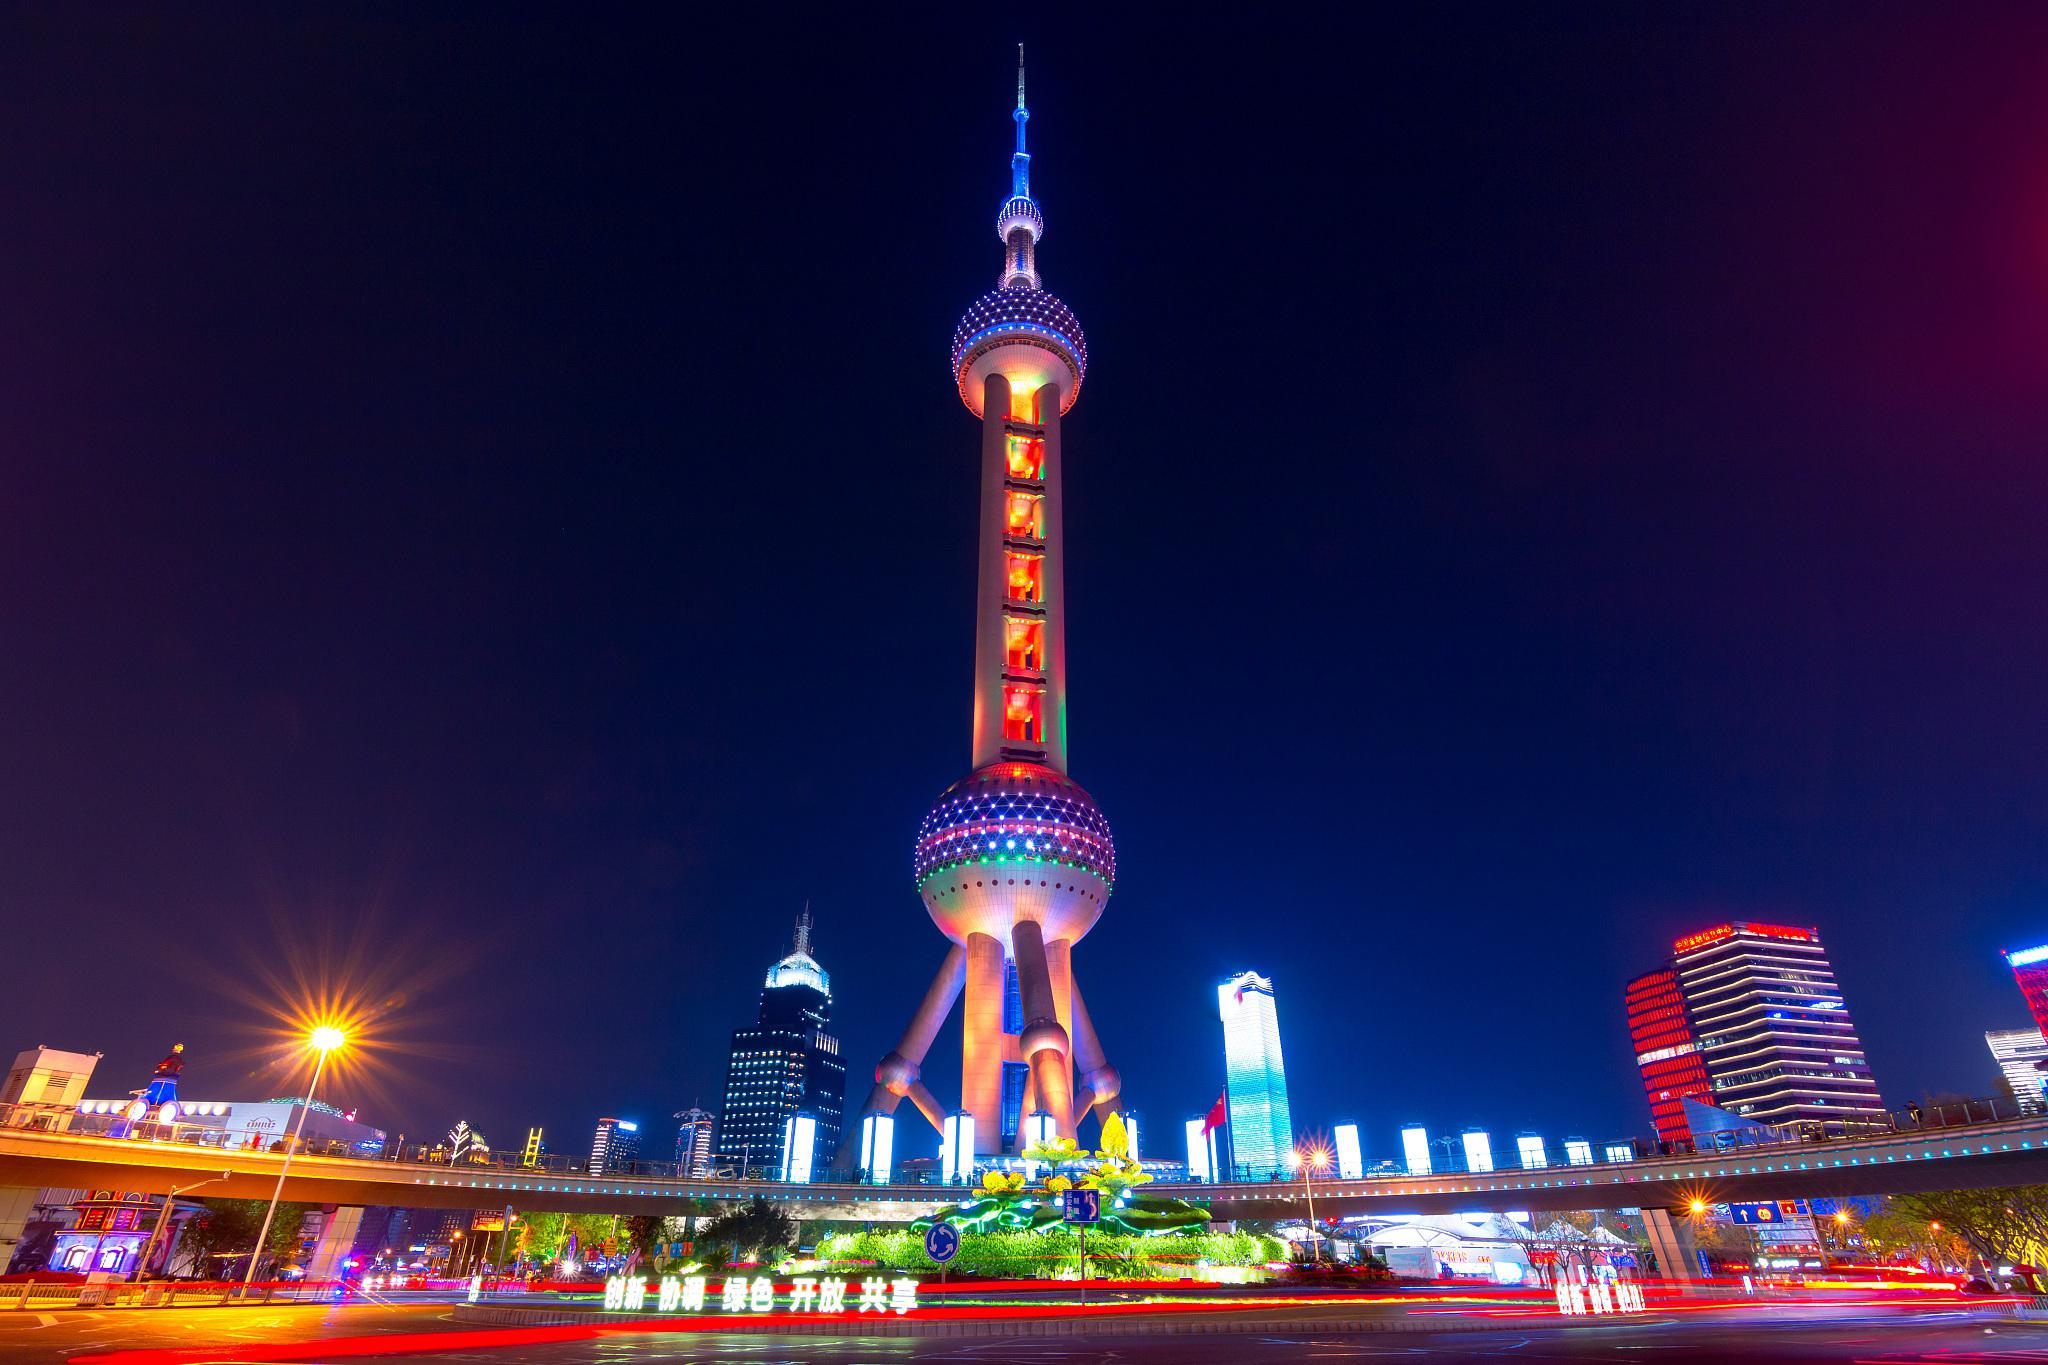 上海的夜明珠 立足浦江两岸,俯瞰这座迷人都市的脉搏,东方明珠塔伫立